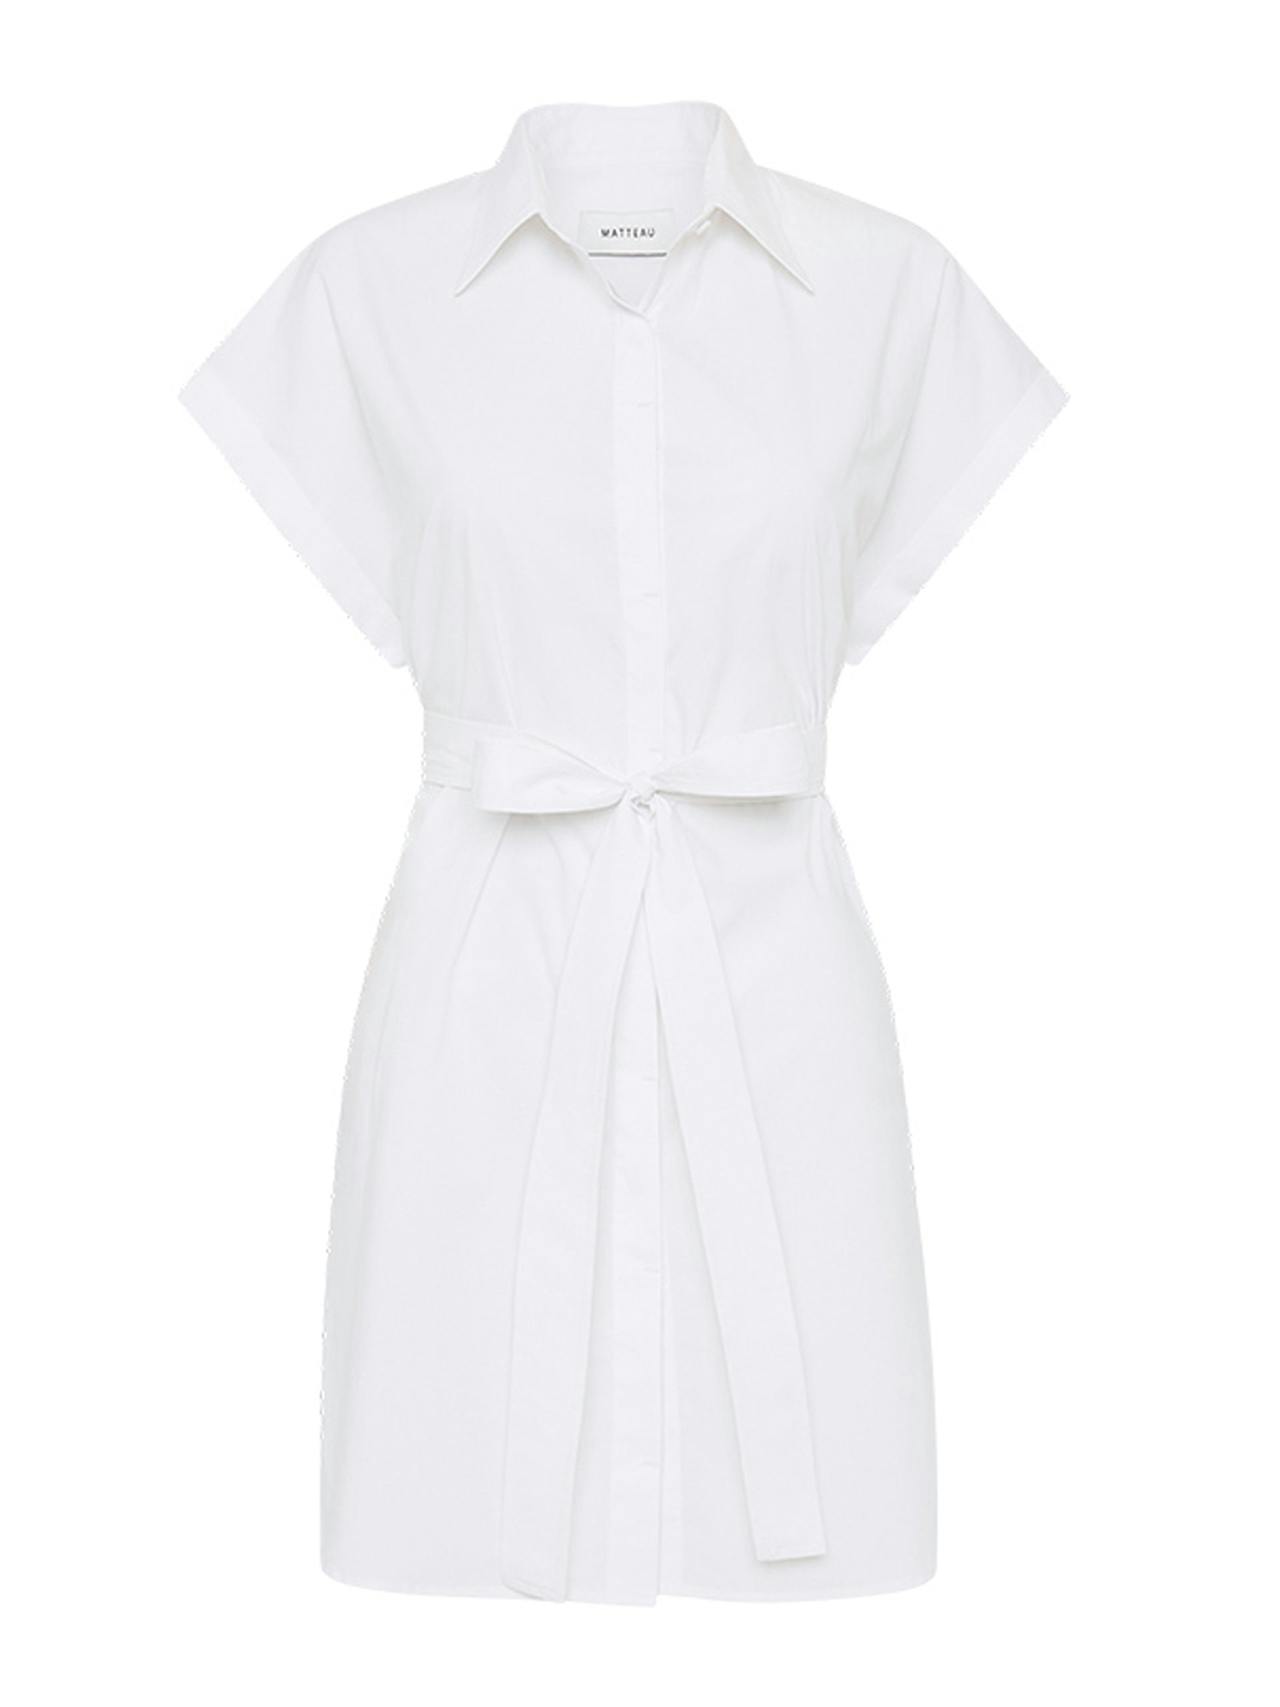 White mini shirt dress